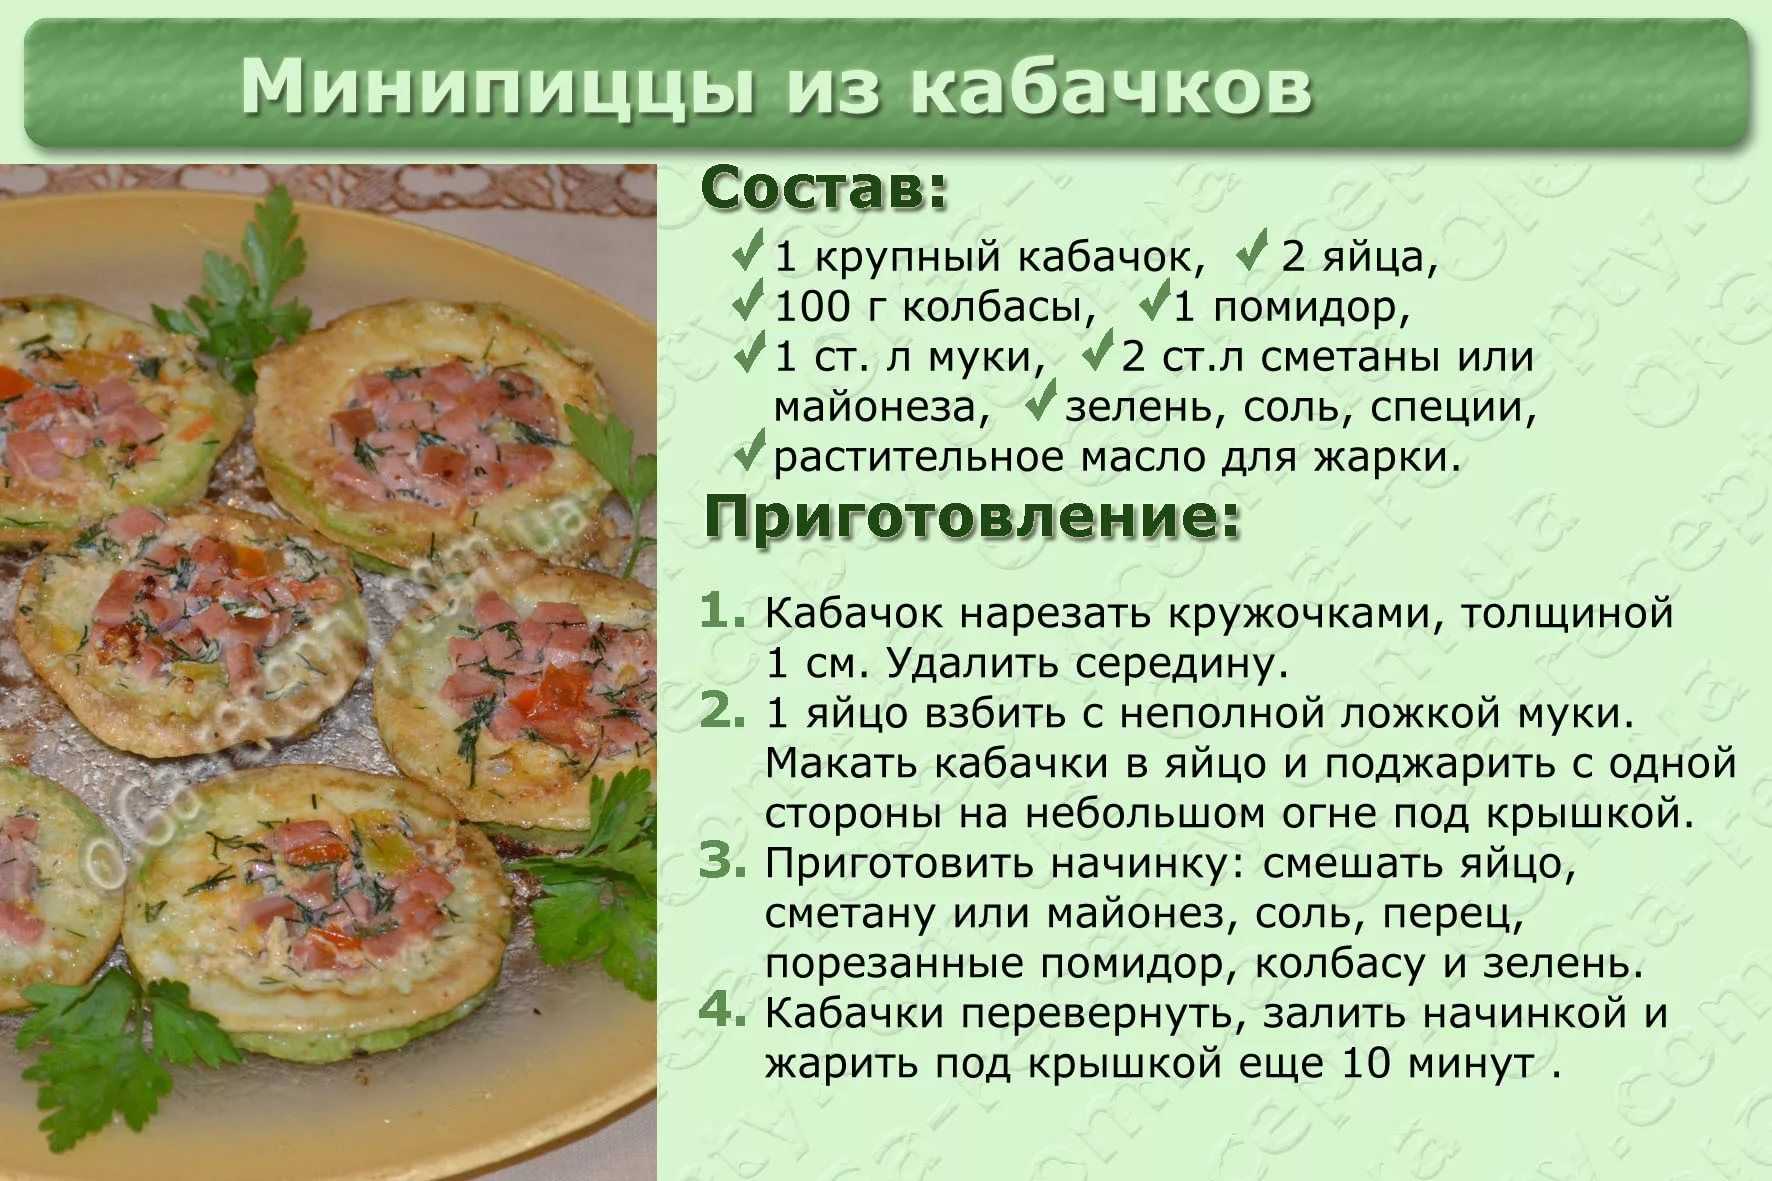 Салат грибок с копченой грудкой, яйцами и шампиньонами рецепт с фото пошагово - 1000.menu